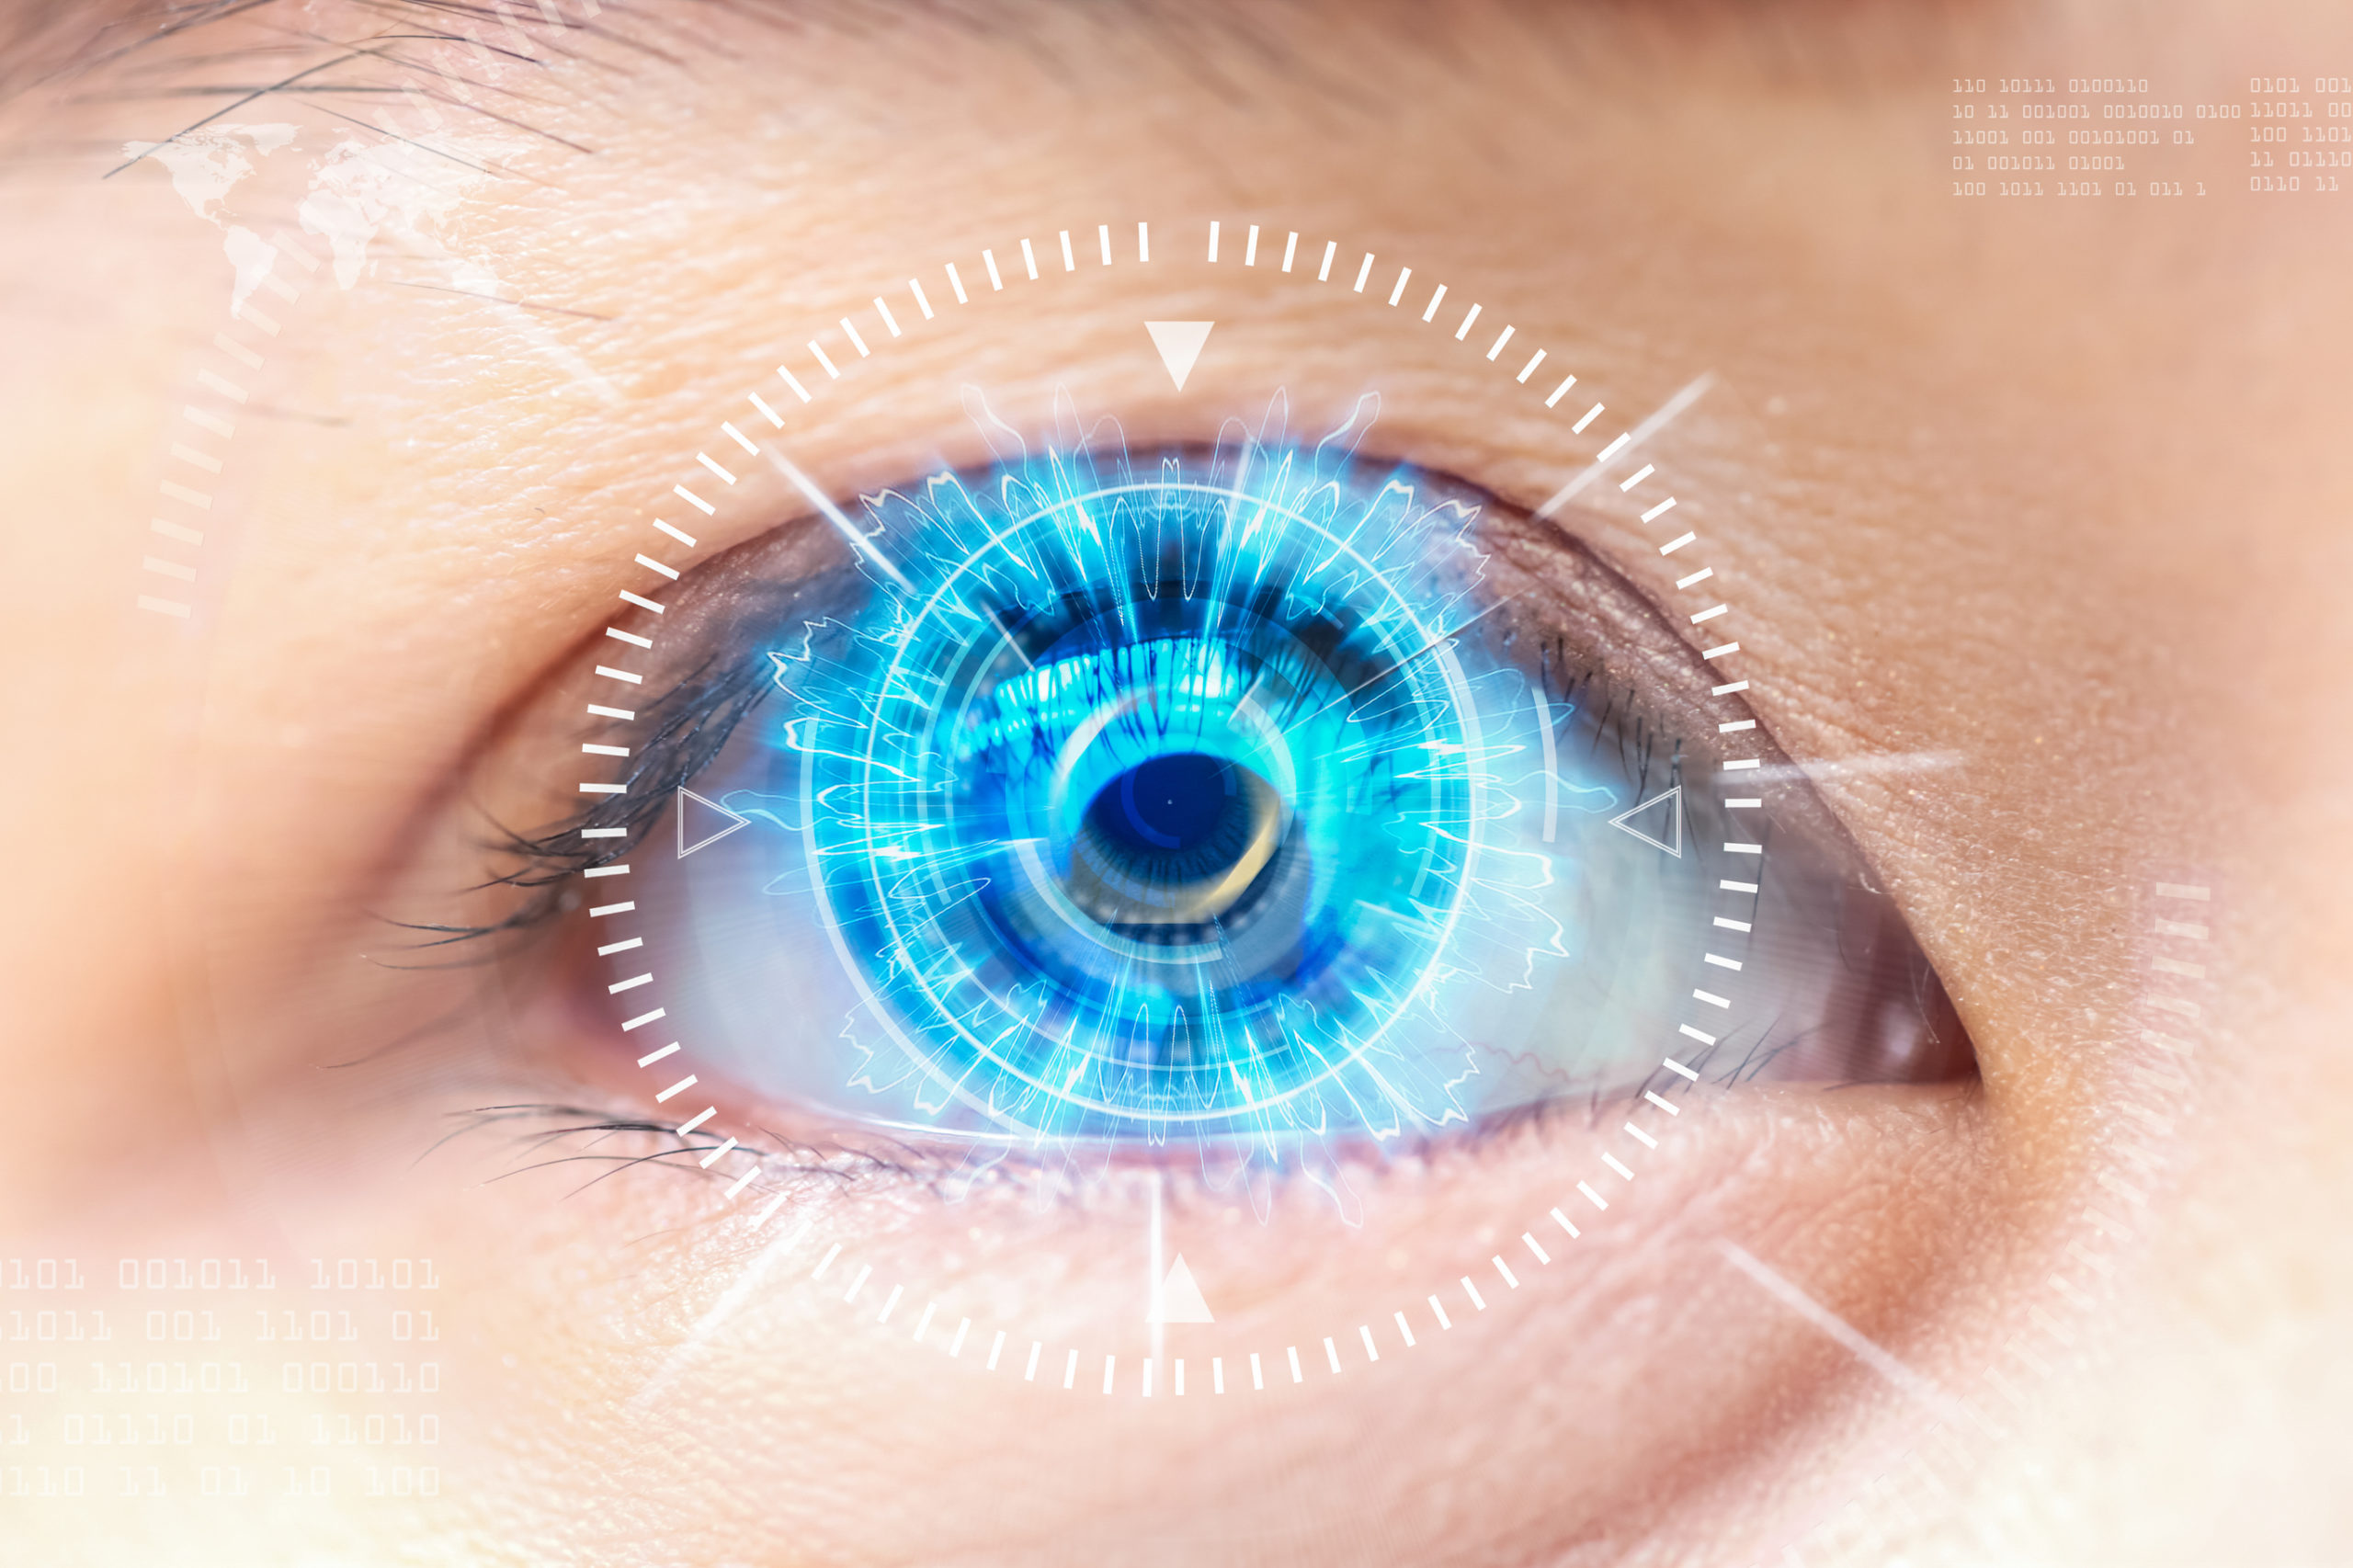 eye surgery technology